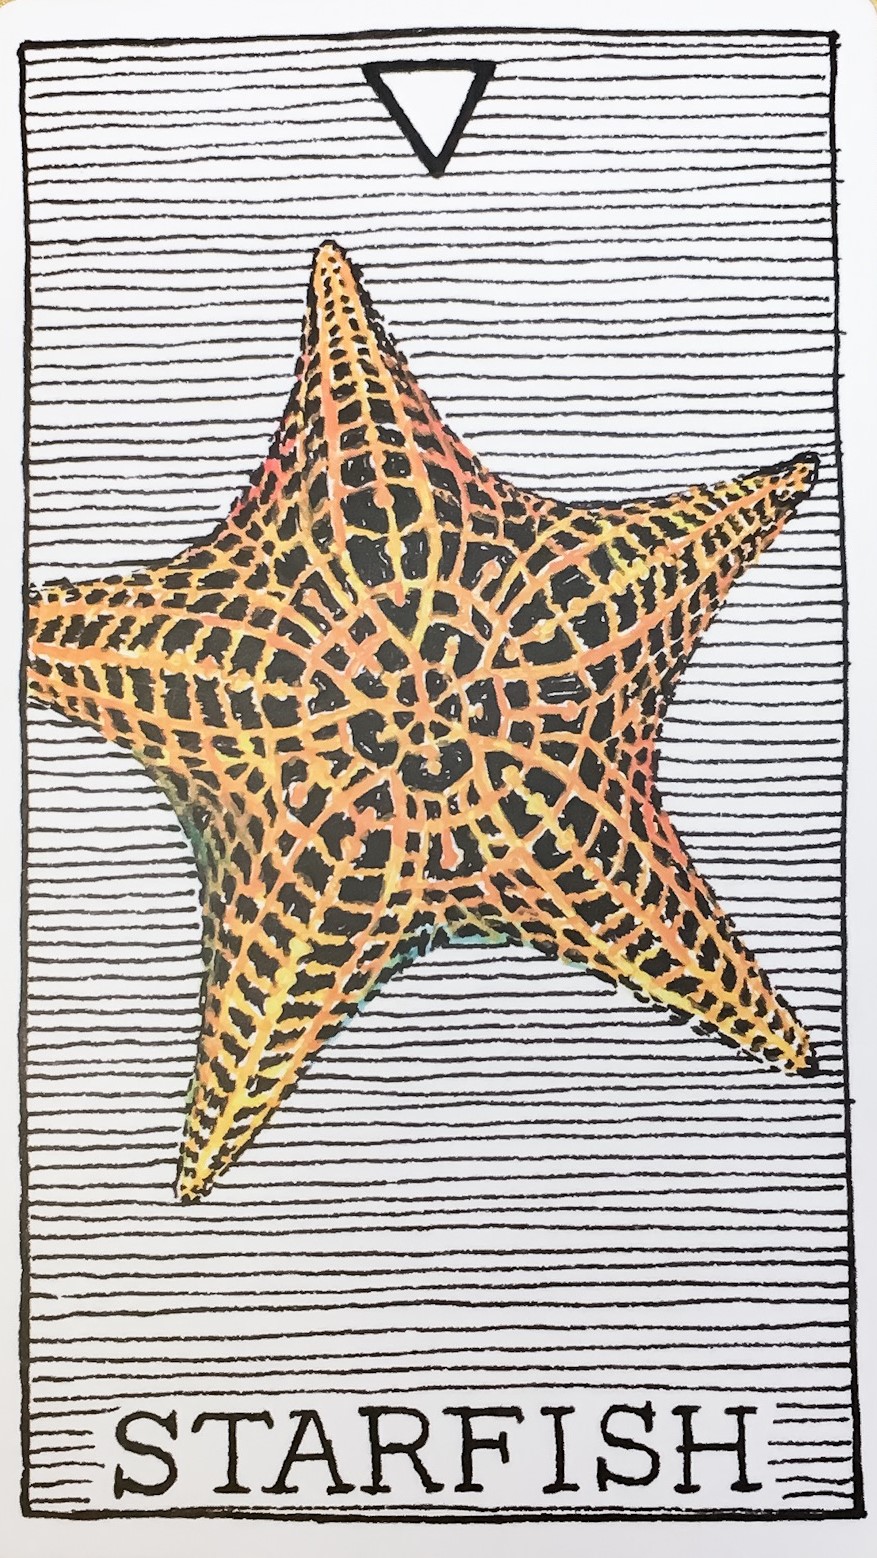 불가사리
starfish
스타피쉬